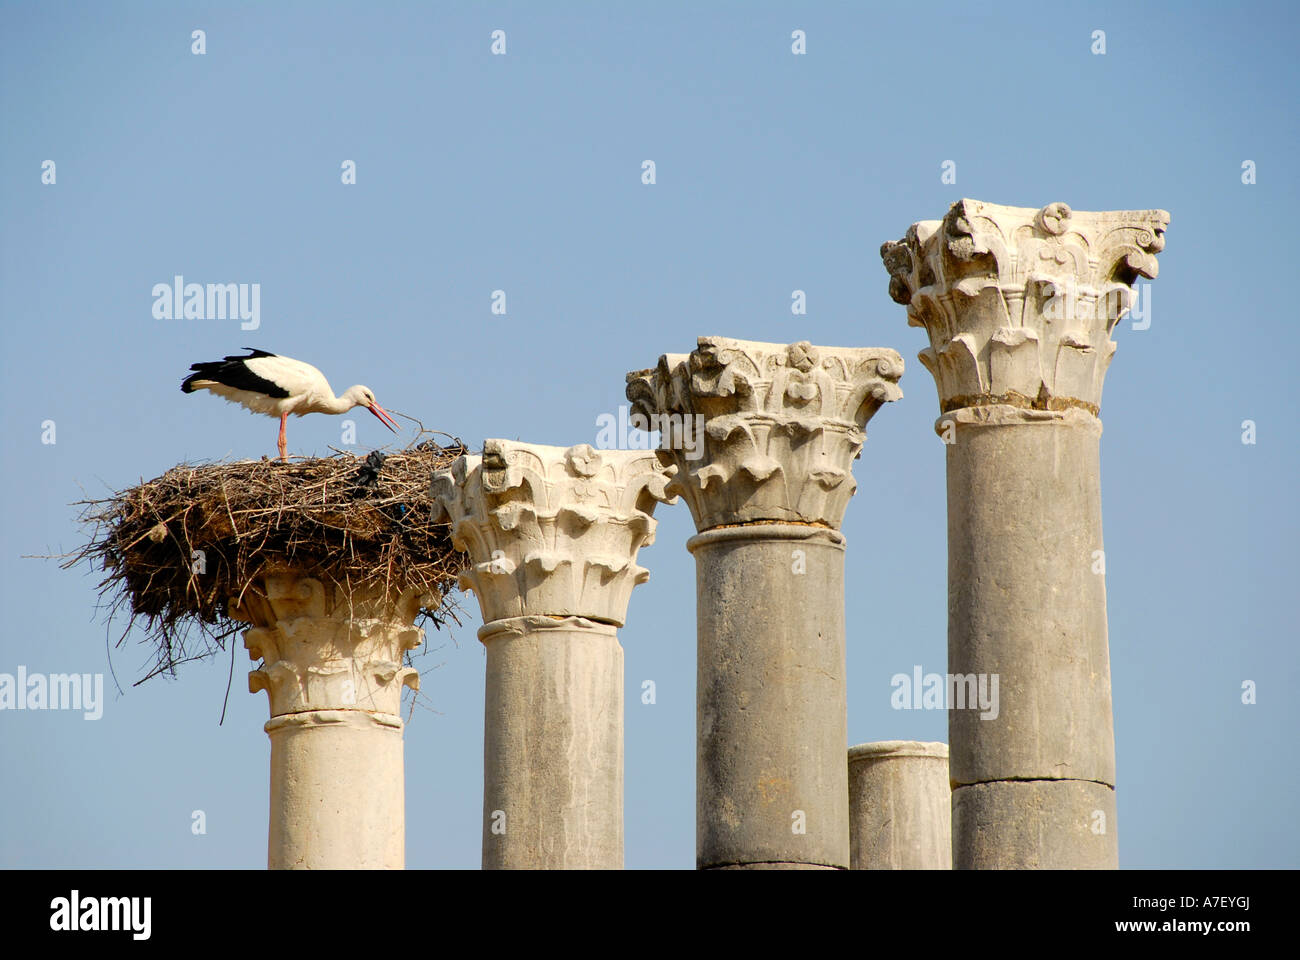 Piliers avec un nid de cigognes Cigogne blanche Ciconia ciconia des fouilles archéologiques de la ville romaine antique de Volubilis Maroc Banque D'Images